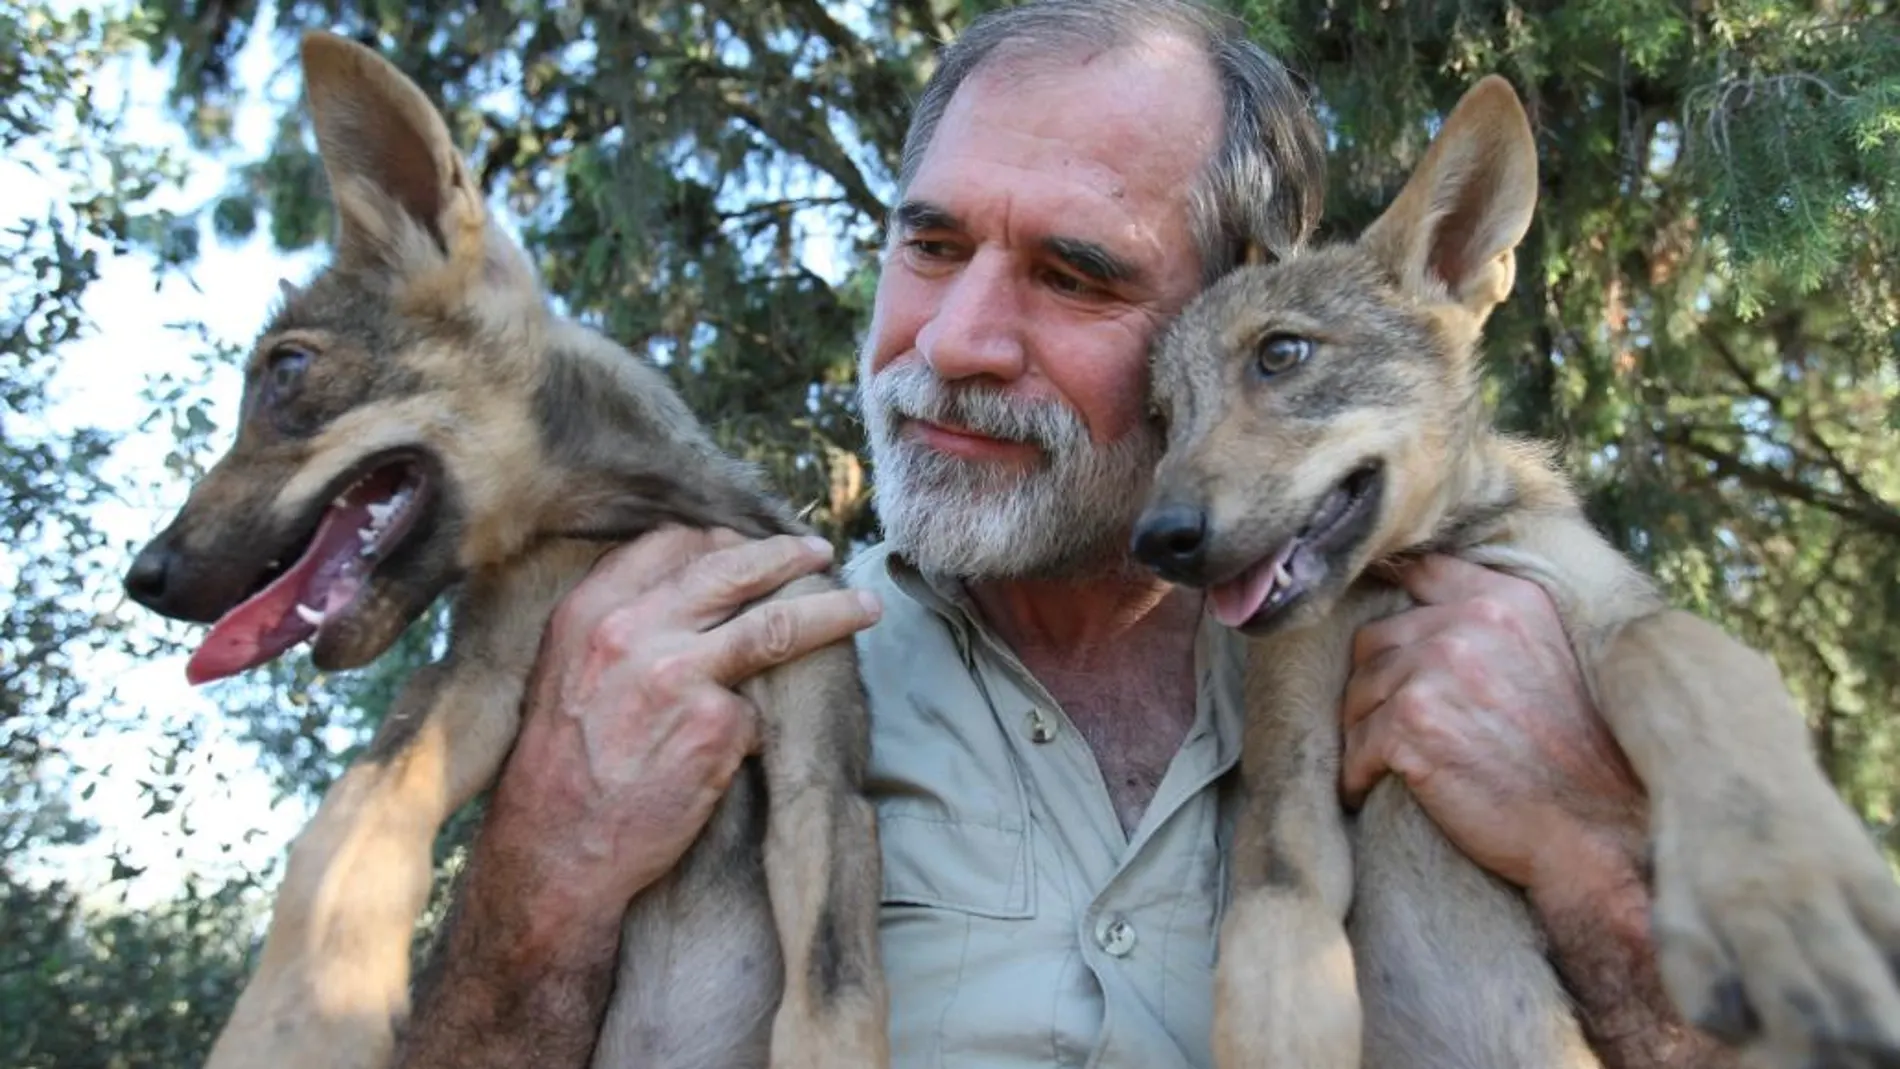 Los lobos podrían convertirse en perros por su dependencia de la comida humana